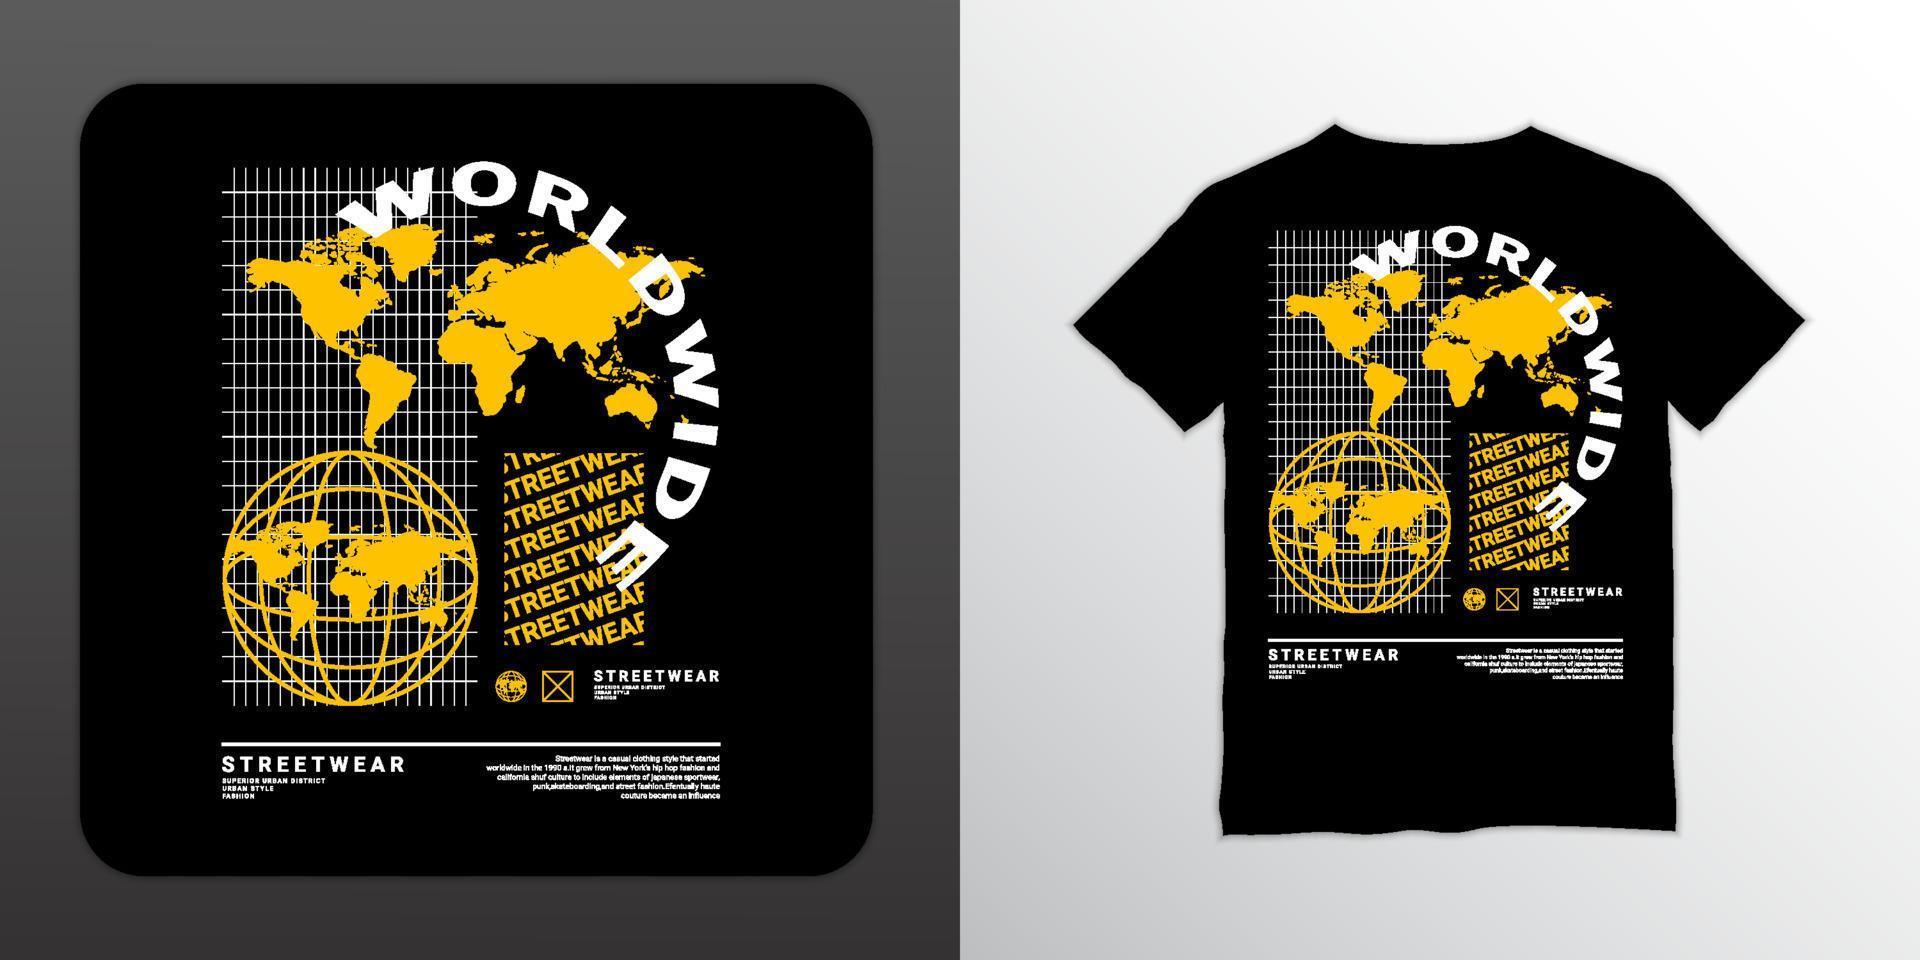 diseño de escritura en todo el mundo, adecuado para serigrafía de camisetas, ropa, chaquetas y otros vector